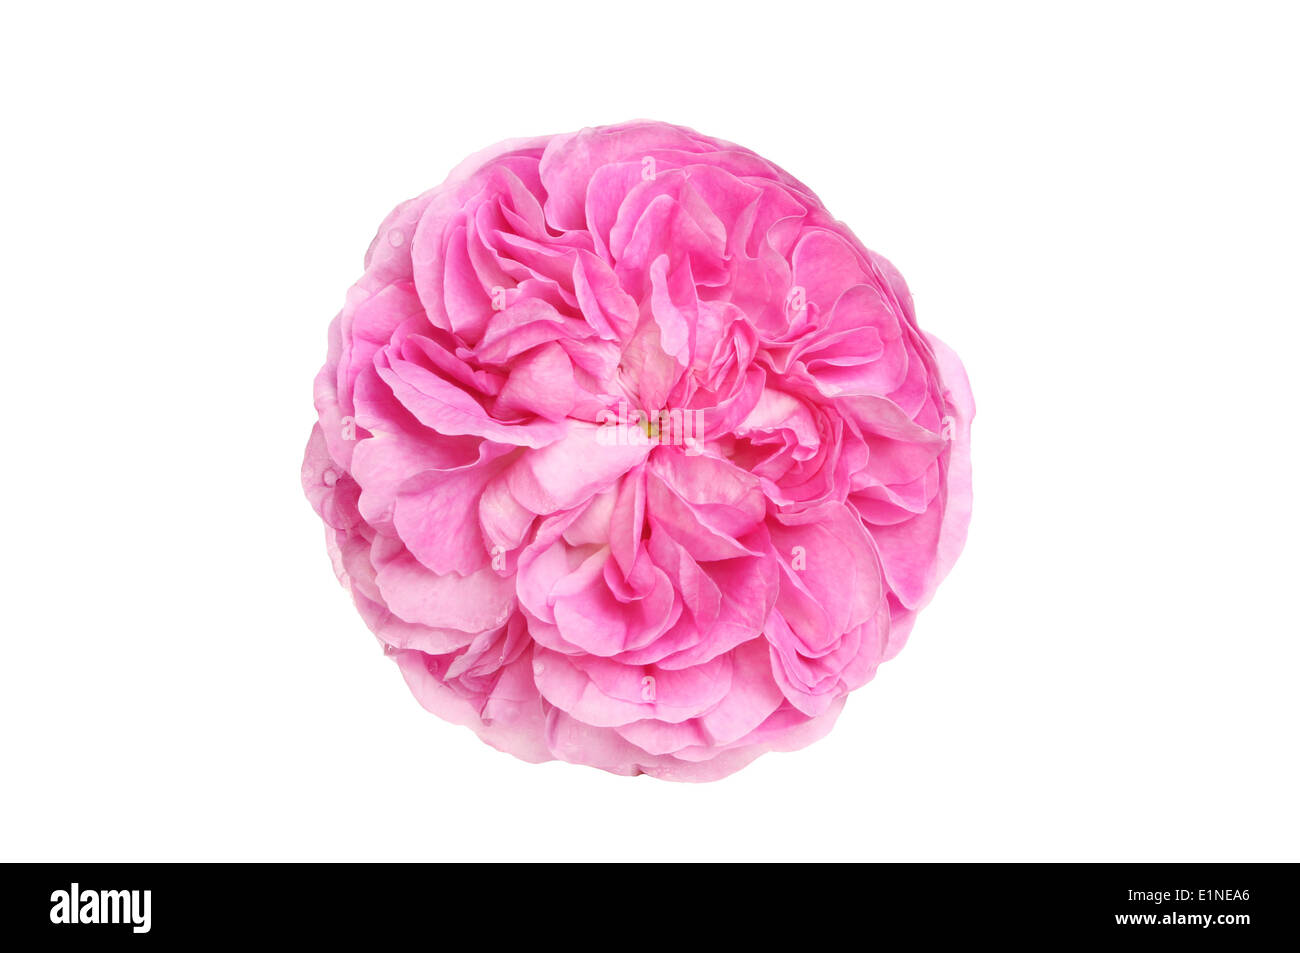 Ronda de un rosa magenta flowerhead aislado contra un blanco Foto de stock